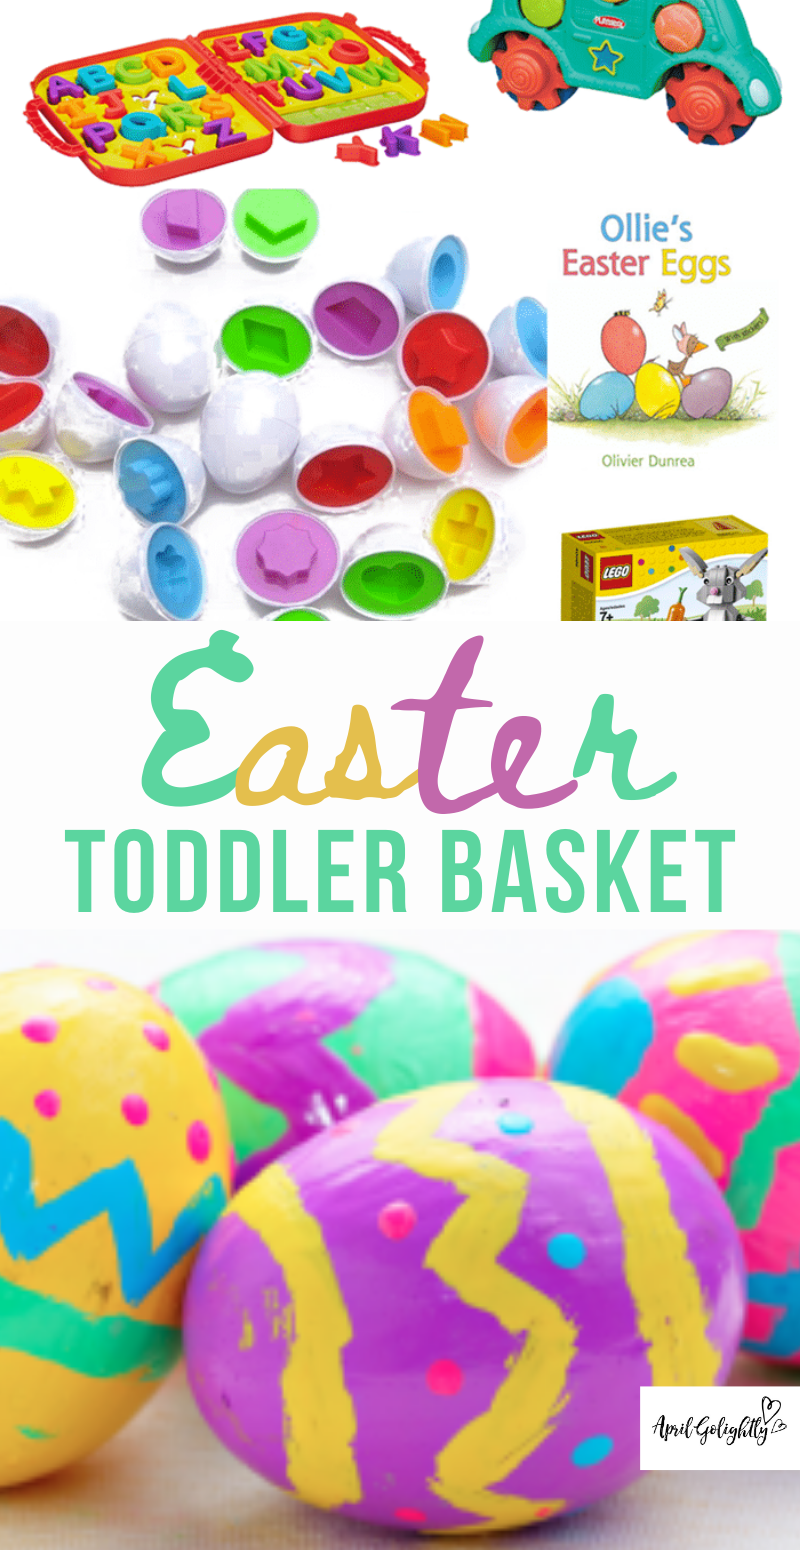 Toddler Easter Basket 